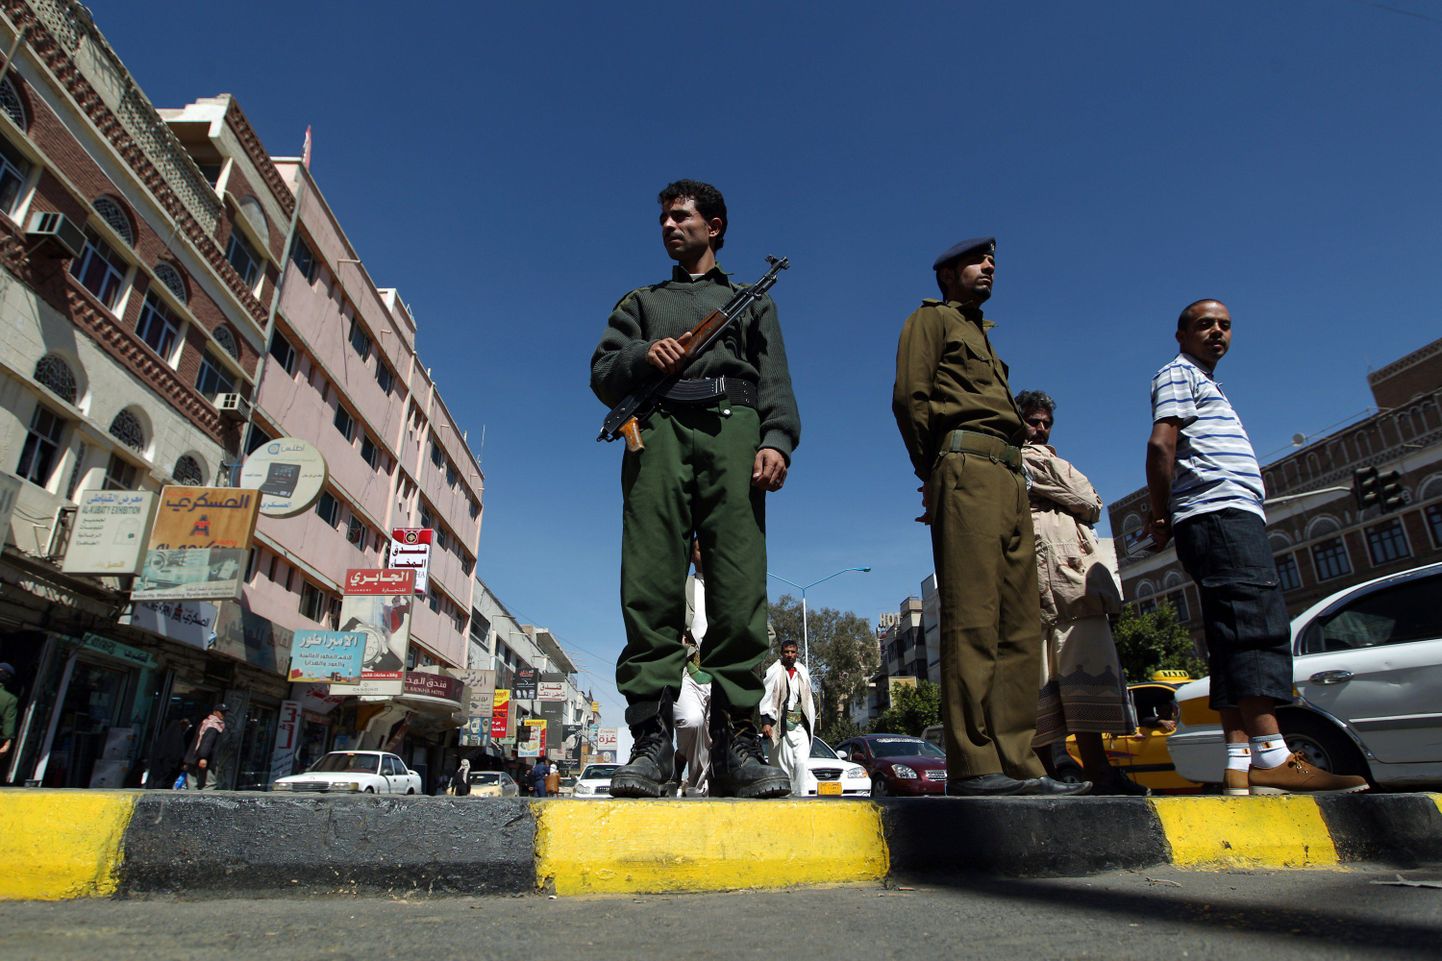 Jeemeni sõdurid Sanaa kesklinnas Tahriri väljakul valvamas.